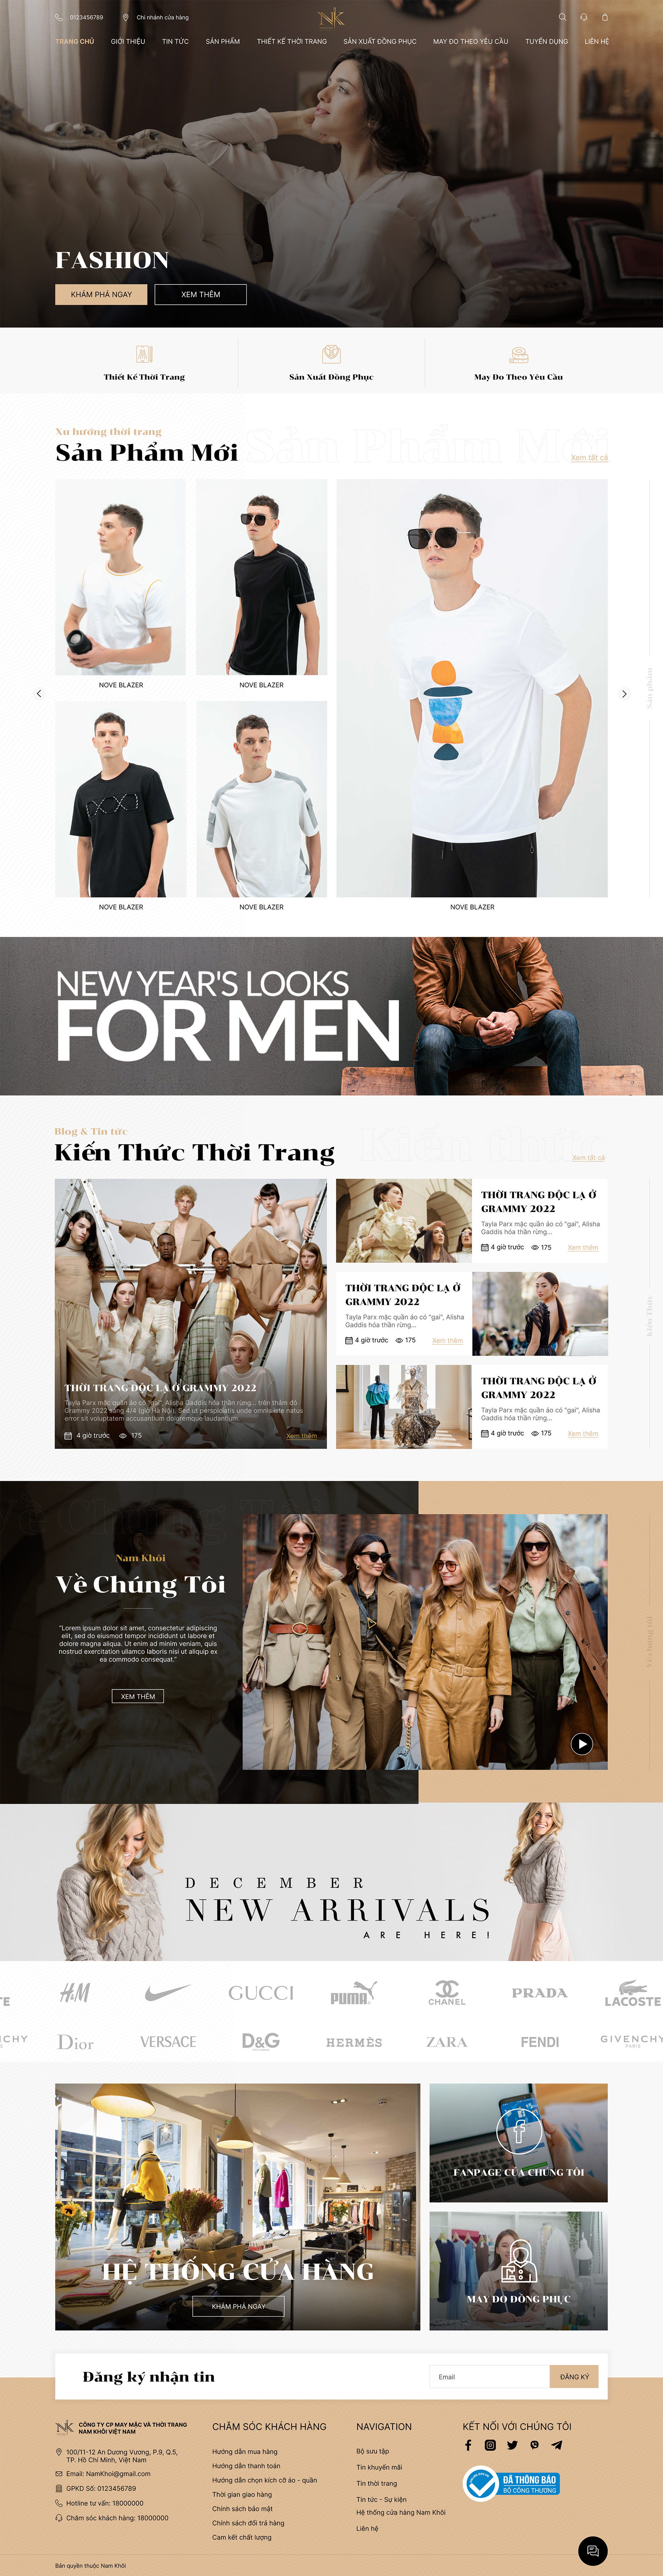 Dự án thời trang may mặc Nam Khôi – Công Ty CP May Mặc Và Thời Trang Nam Khôi Việt Nam